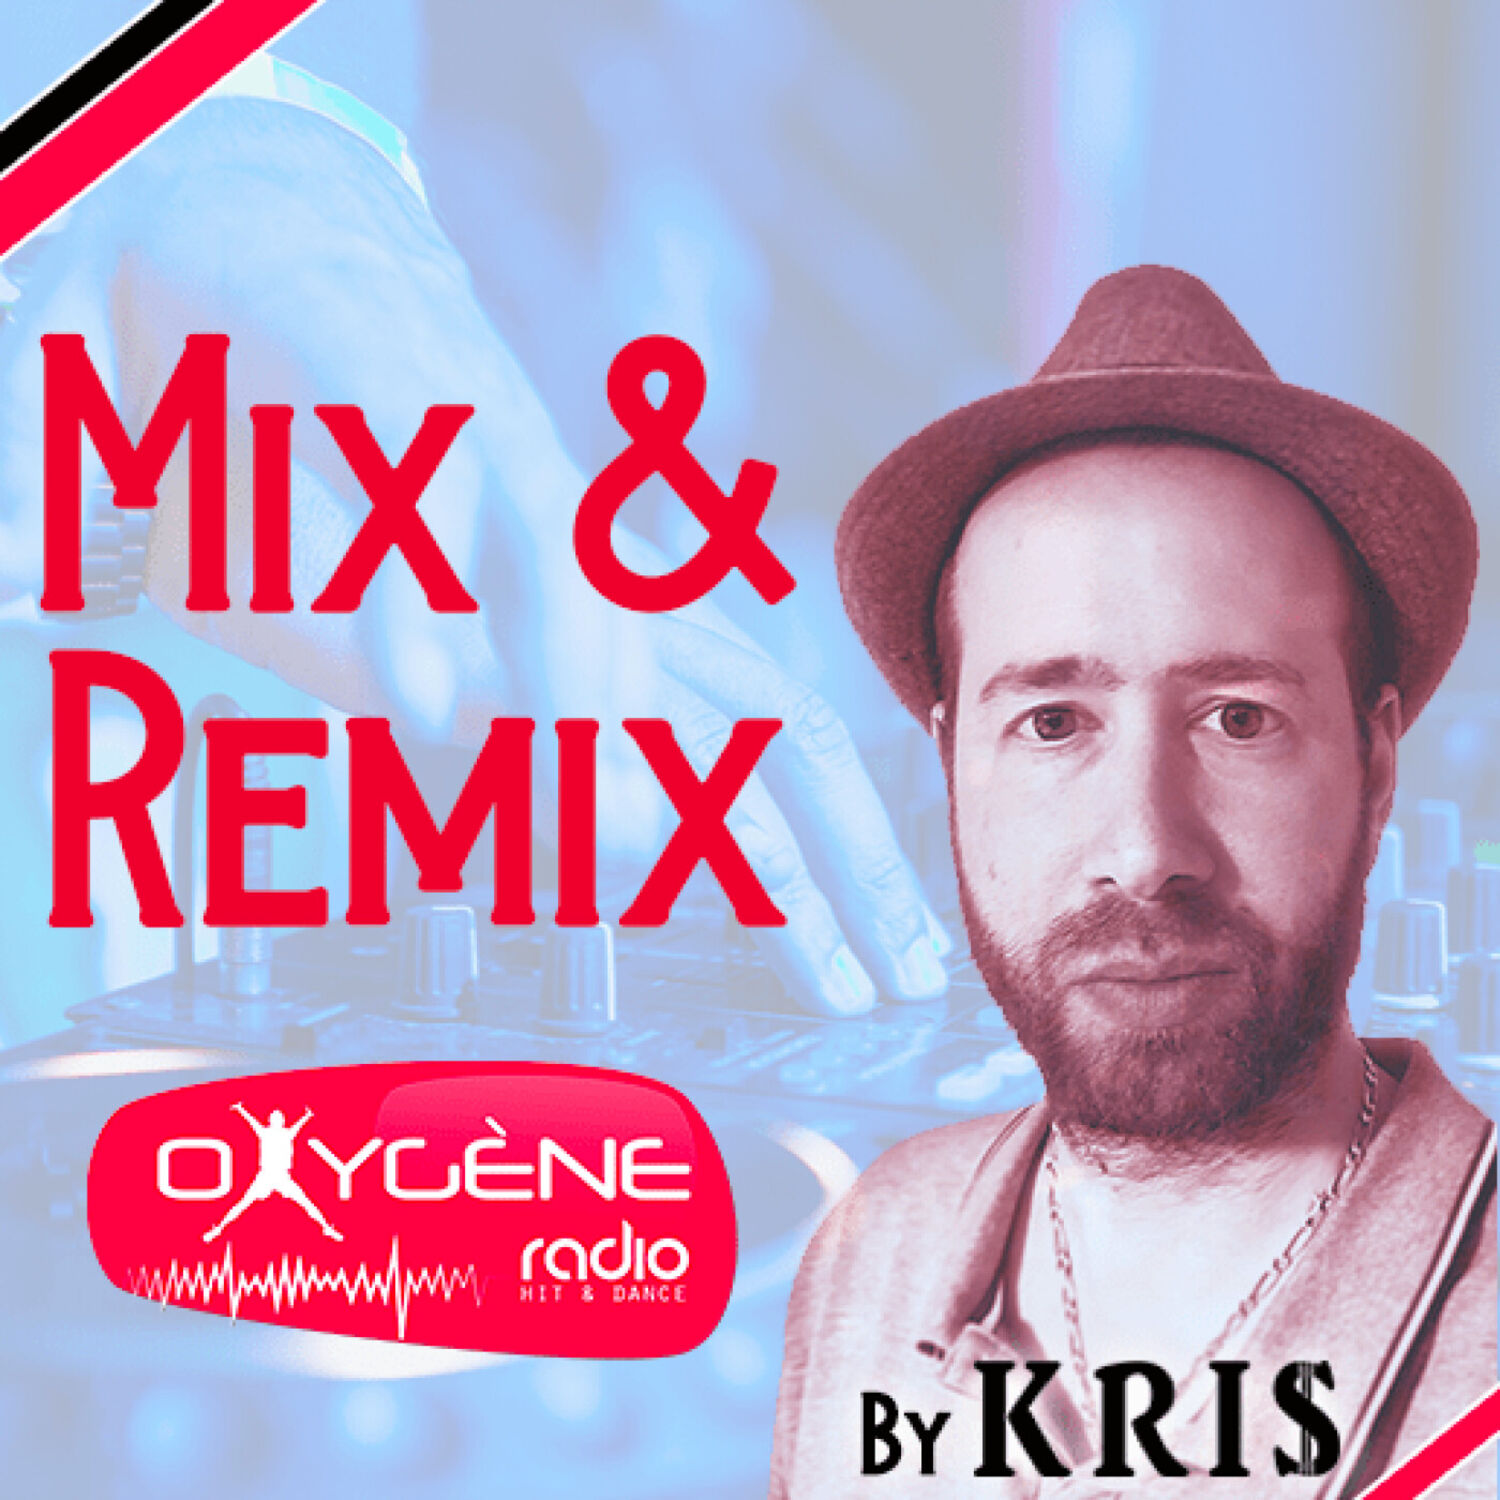 Dance - Sax' remix cession